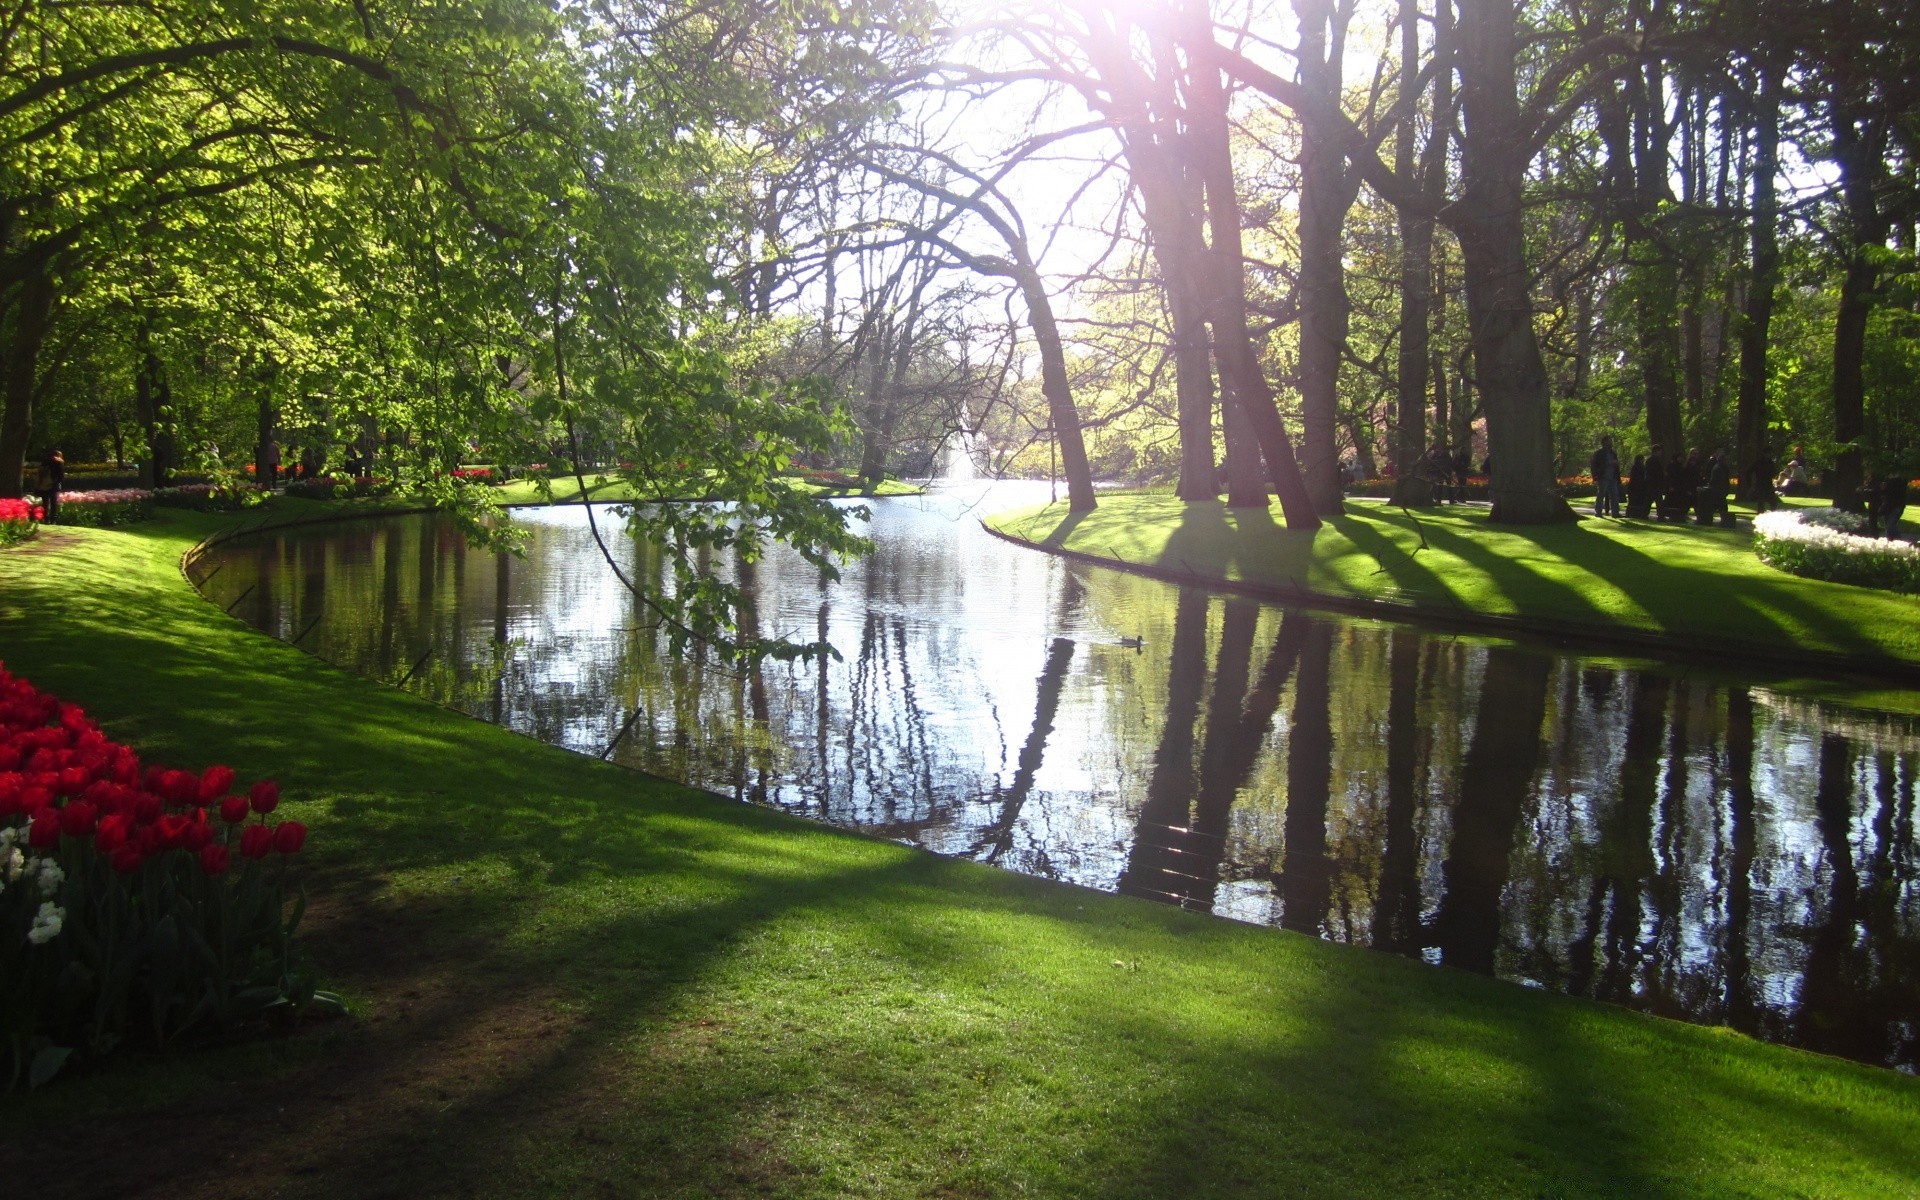 пейзажи пейзаж дерево древесины парк природа трава воды живописный руководство среды лист на открытом воздухе сад река озеро лето бассейн отражение рассвет